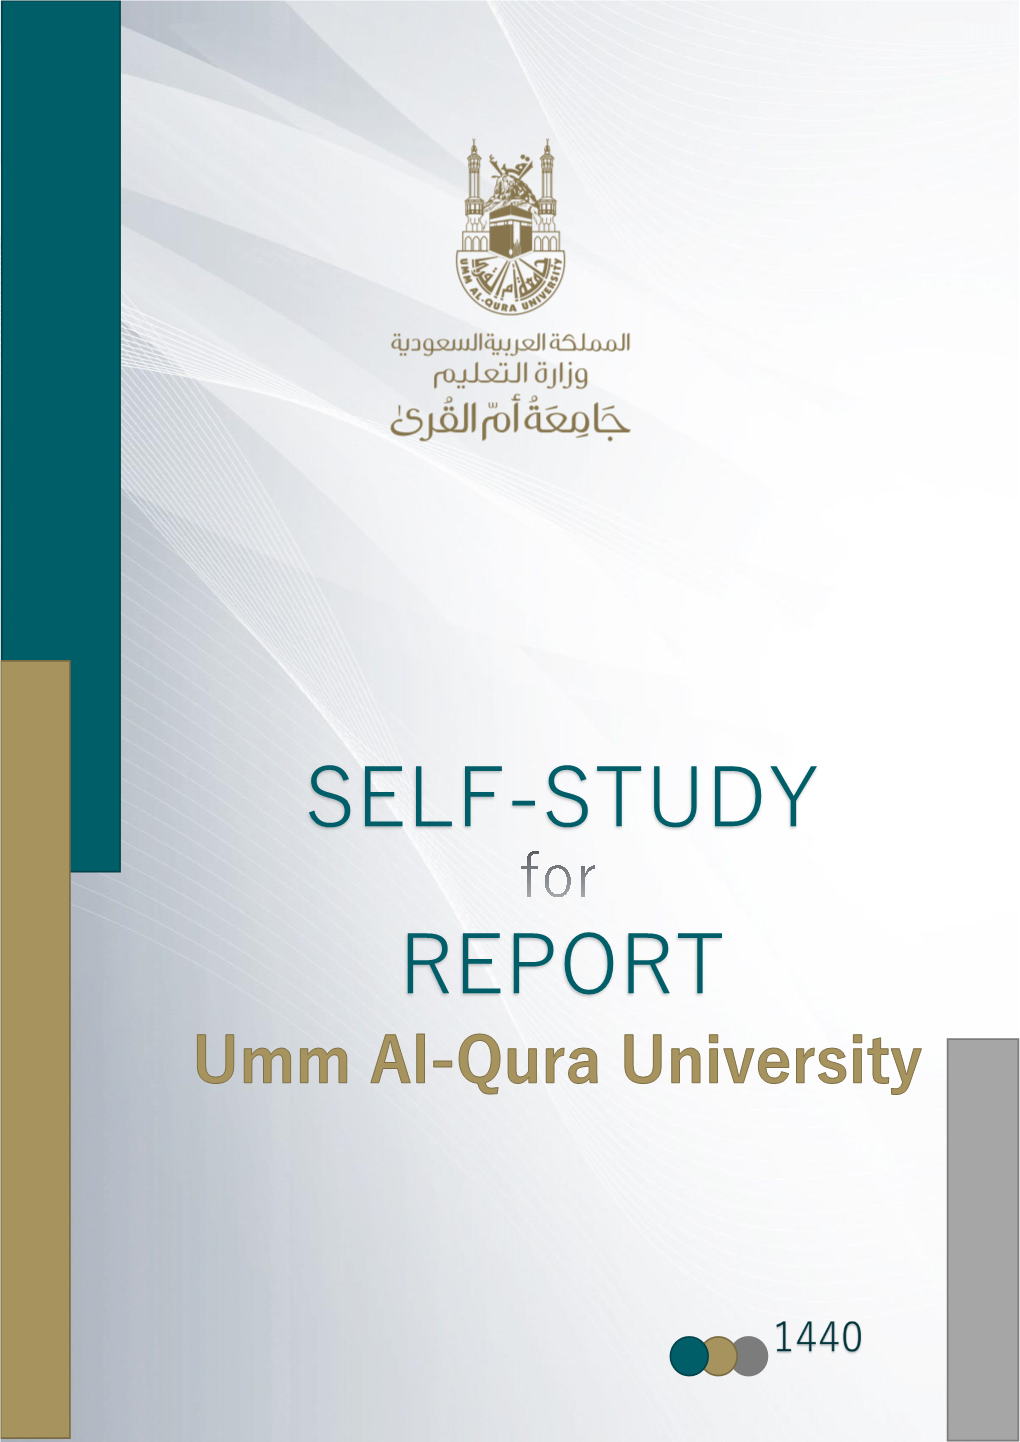 Self-Study Report for Umm Al-Qura University